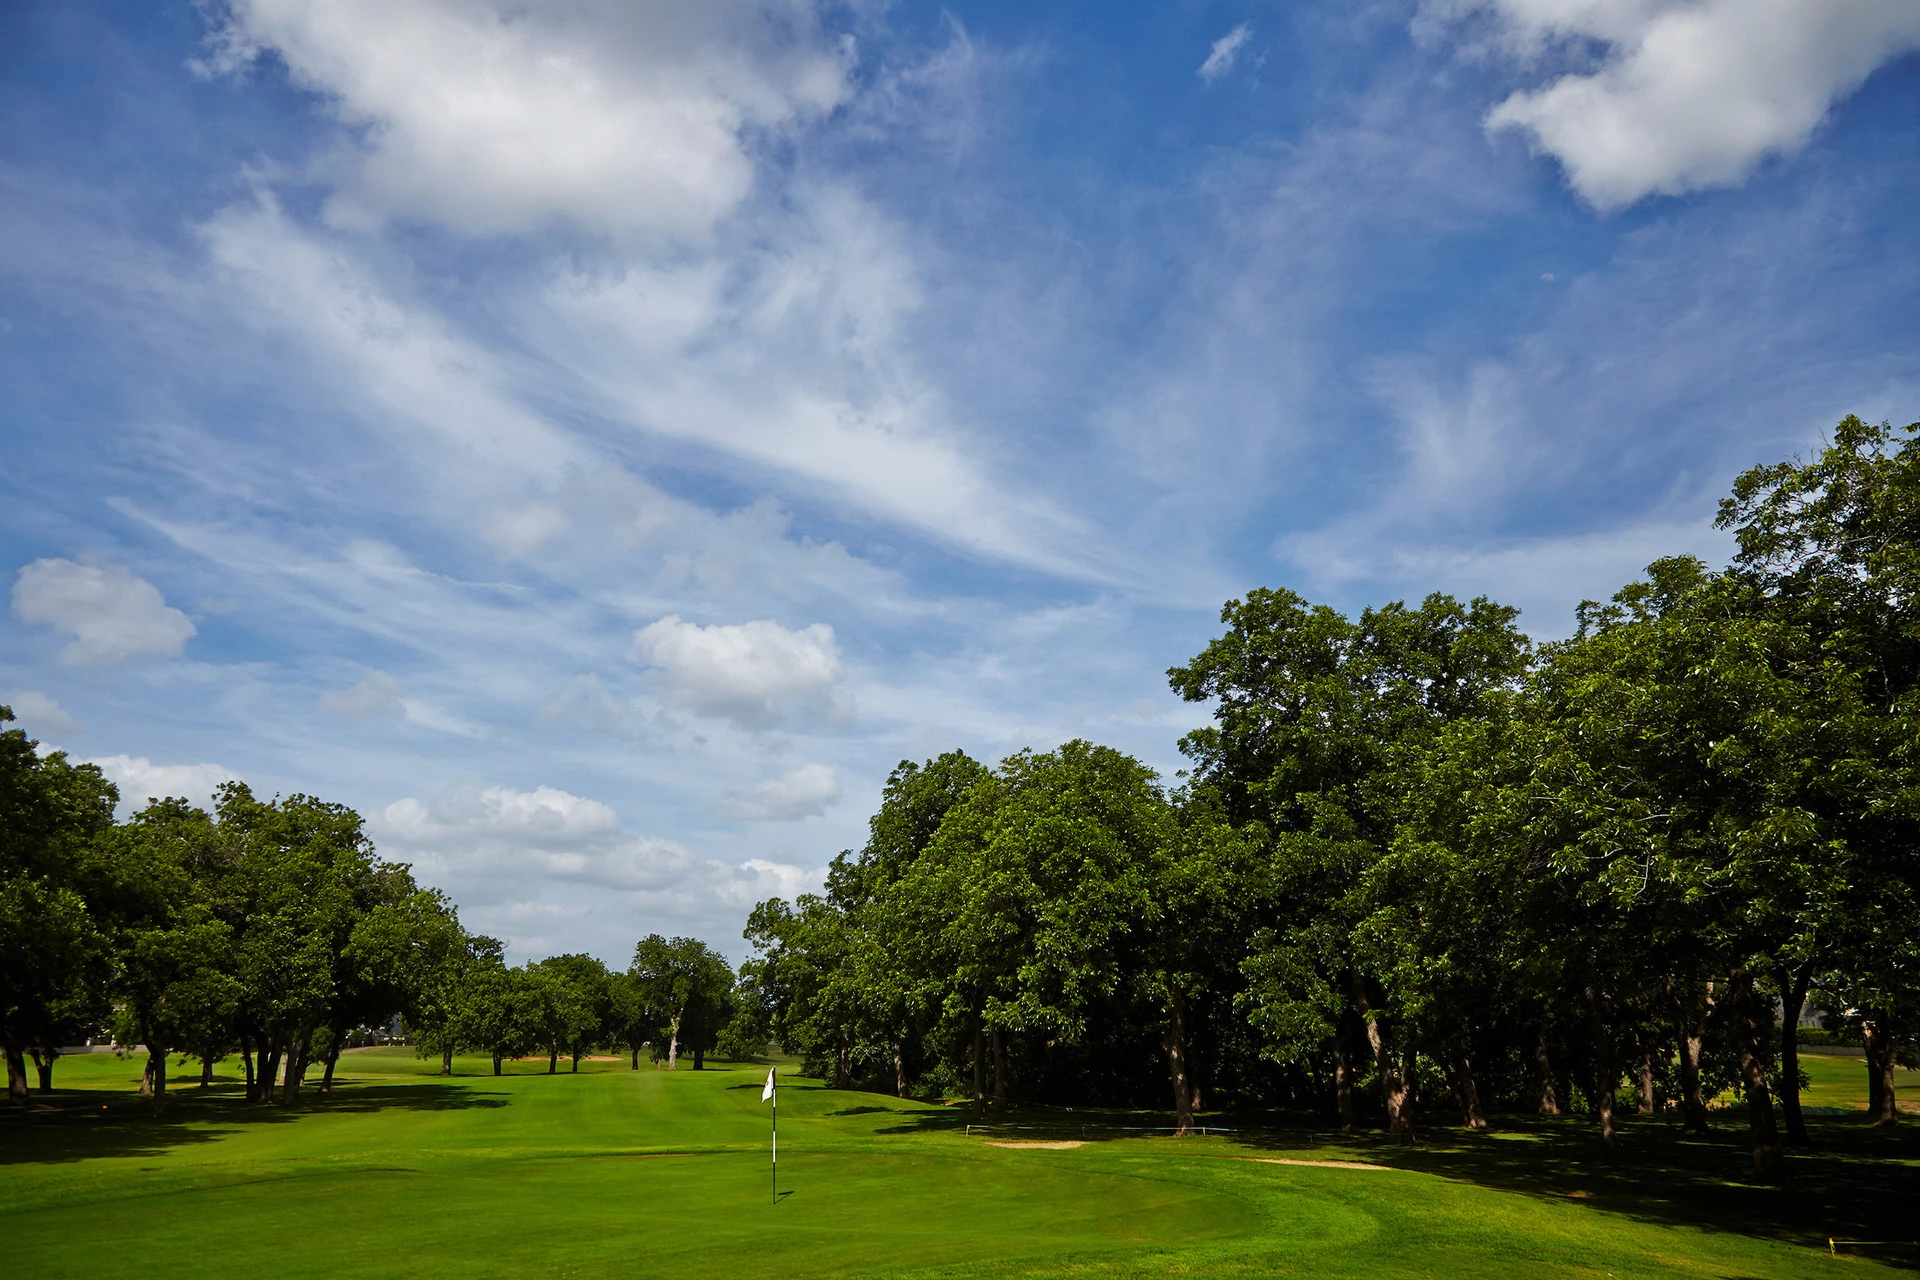 Walnut Creek Country Club - Golf Course Oak Hole #10